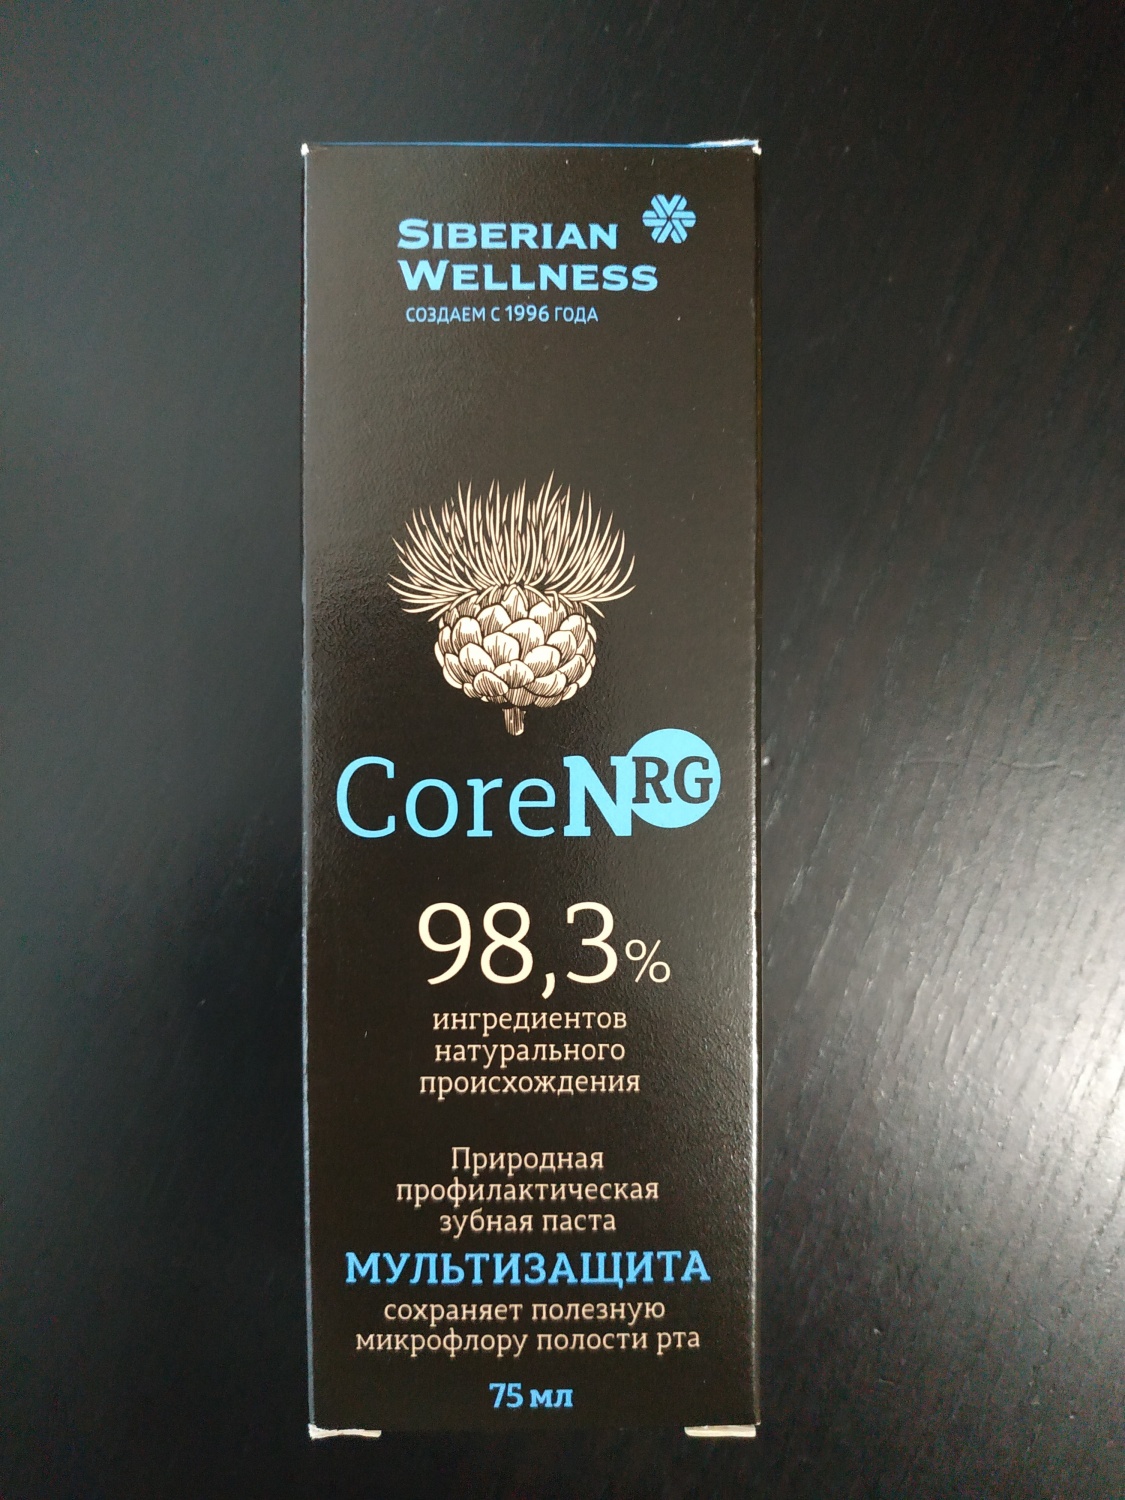 Зубная паста Siberian Wellness (Сибирское здоровье) Природная профилактическая CoreNRG фото